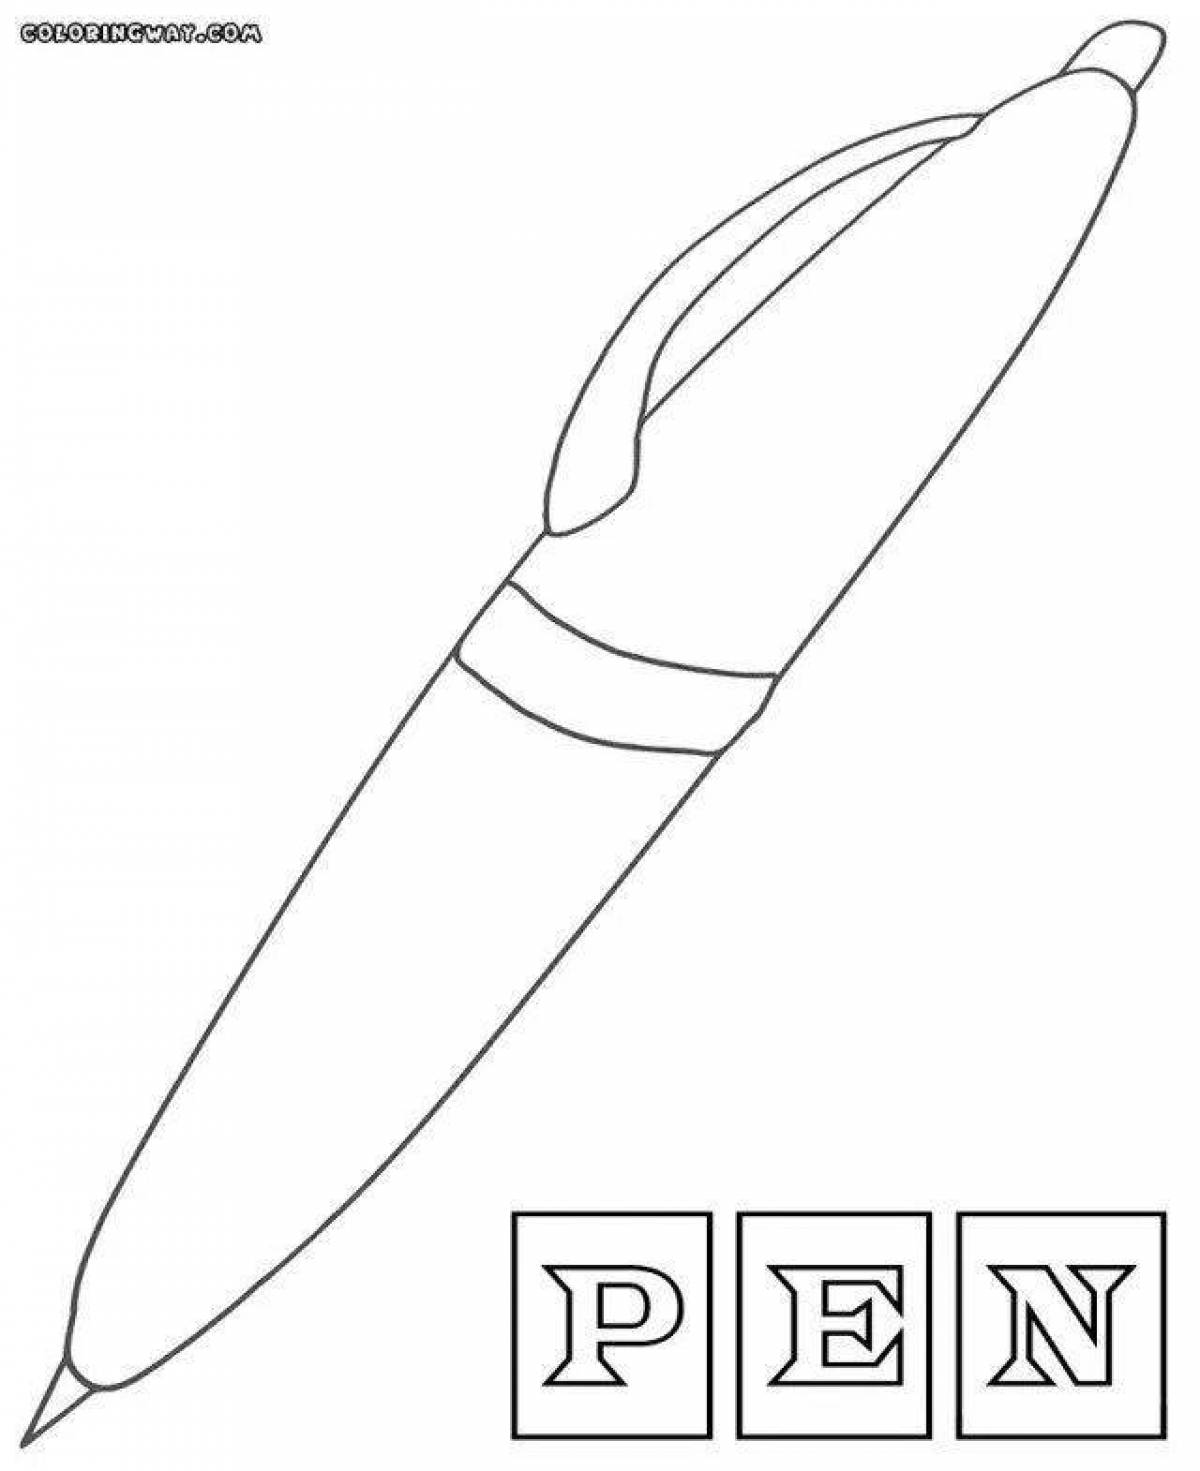 Children's pen #1